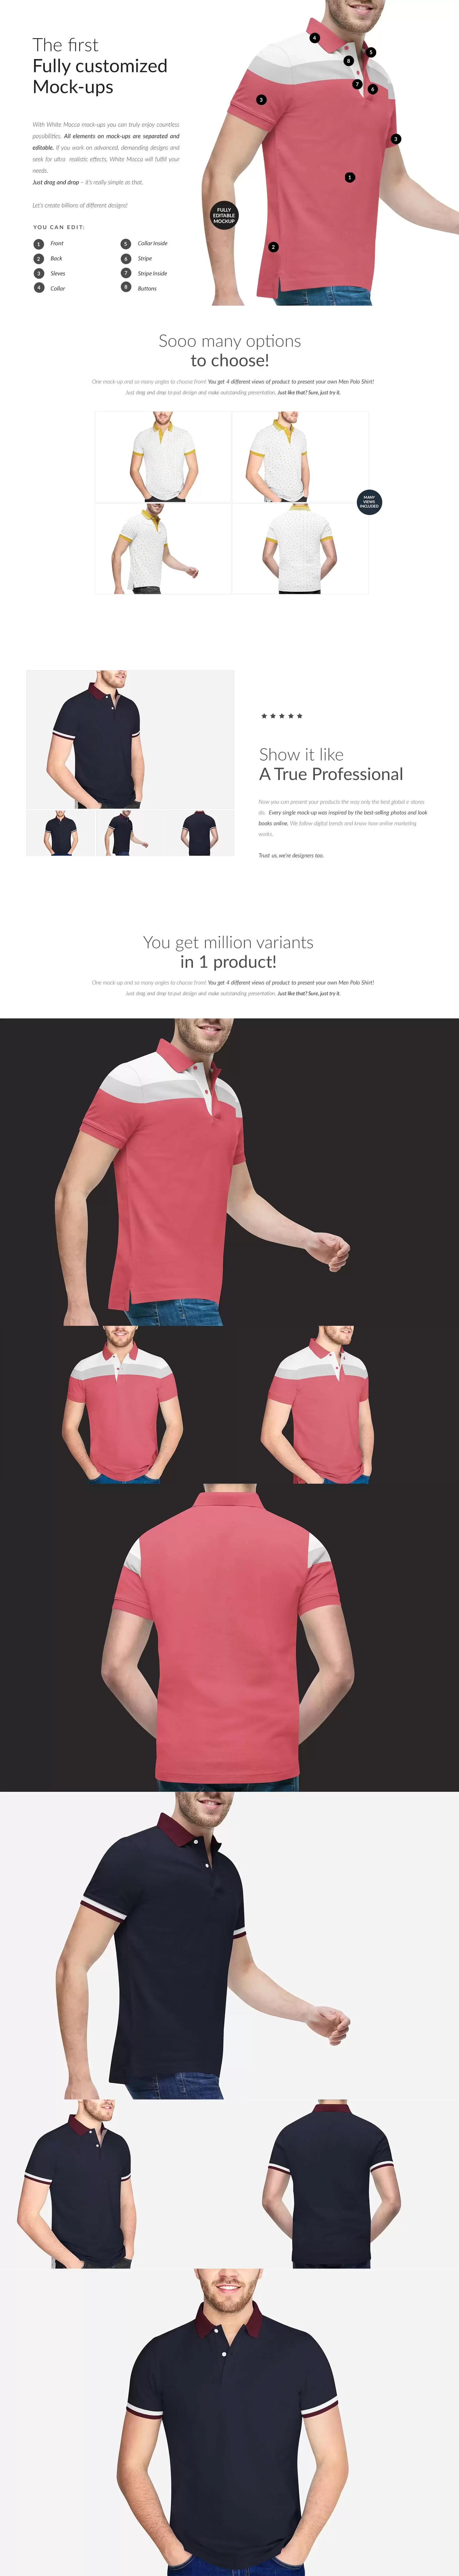 男士Polo衫服装设计样机 (psd)免费下载插图1